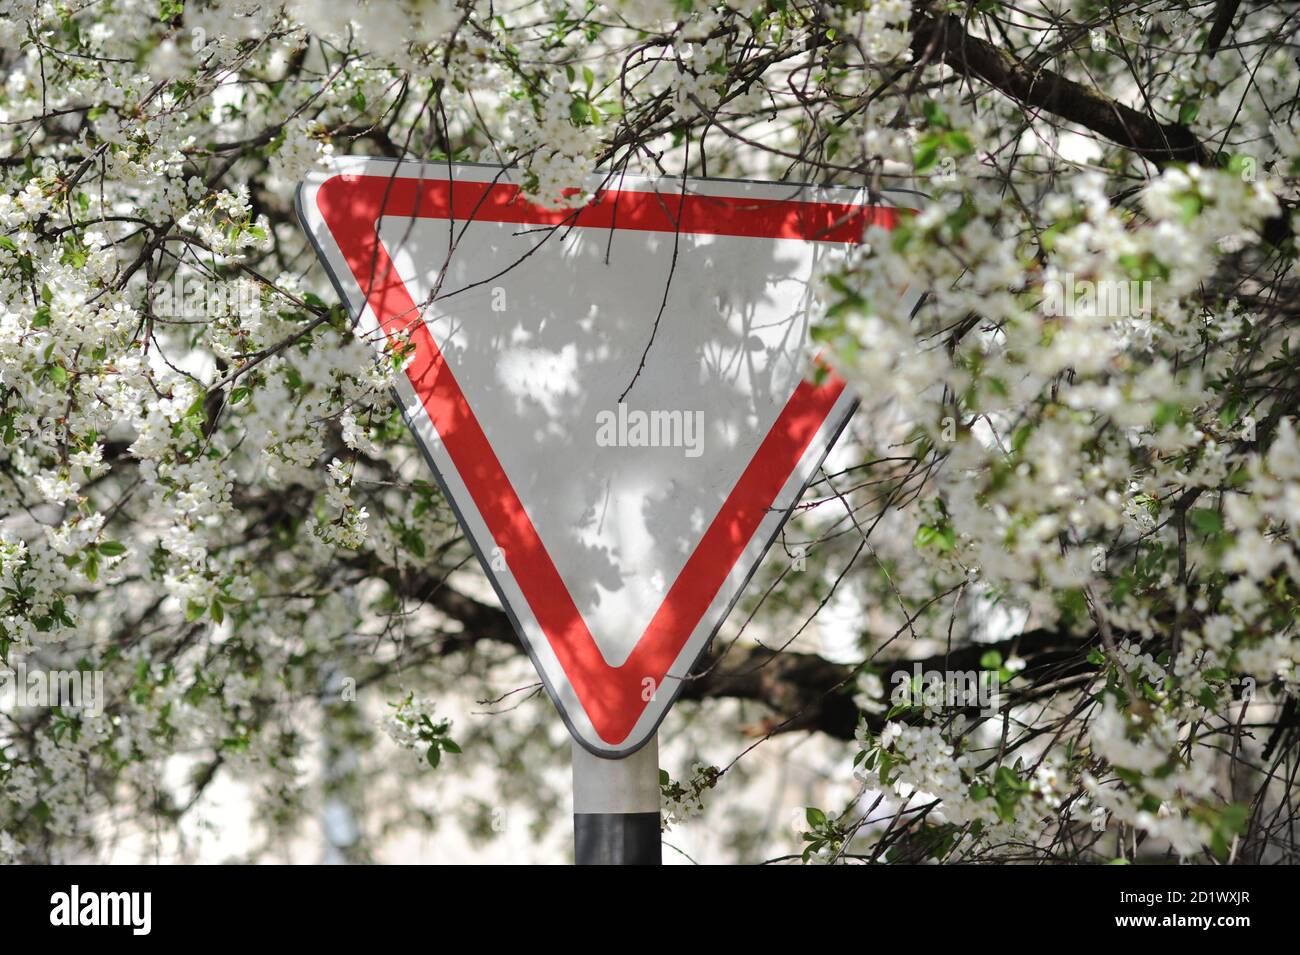 Prenez la route. Panneau de signalisation routière dans la rue. Vieux triangle de signalisation sur le fond des fleurs de printemps. Image en lumière naturelle. Mise au point sélective. Banque D'Images